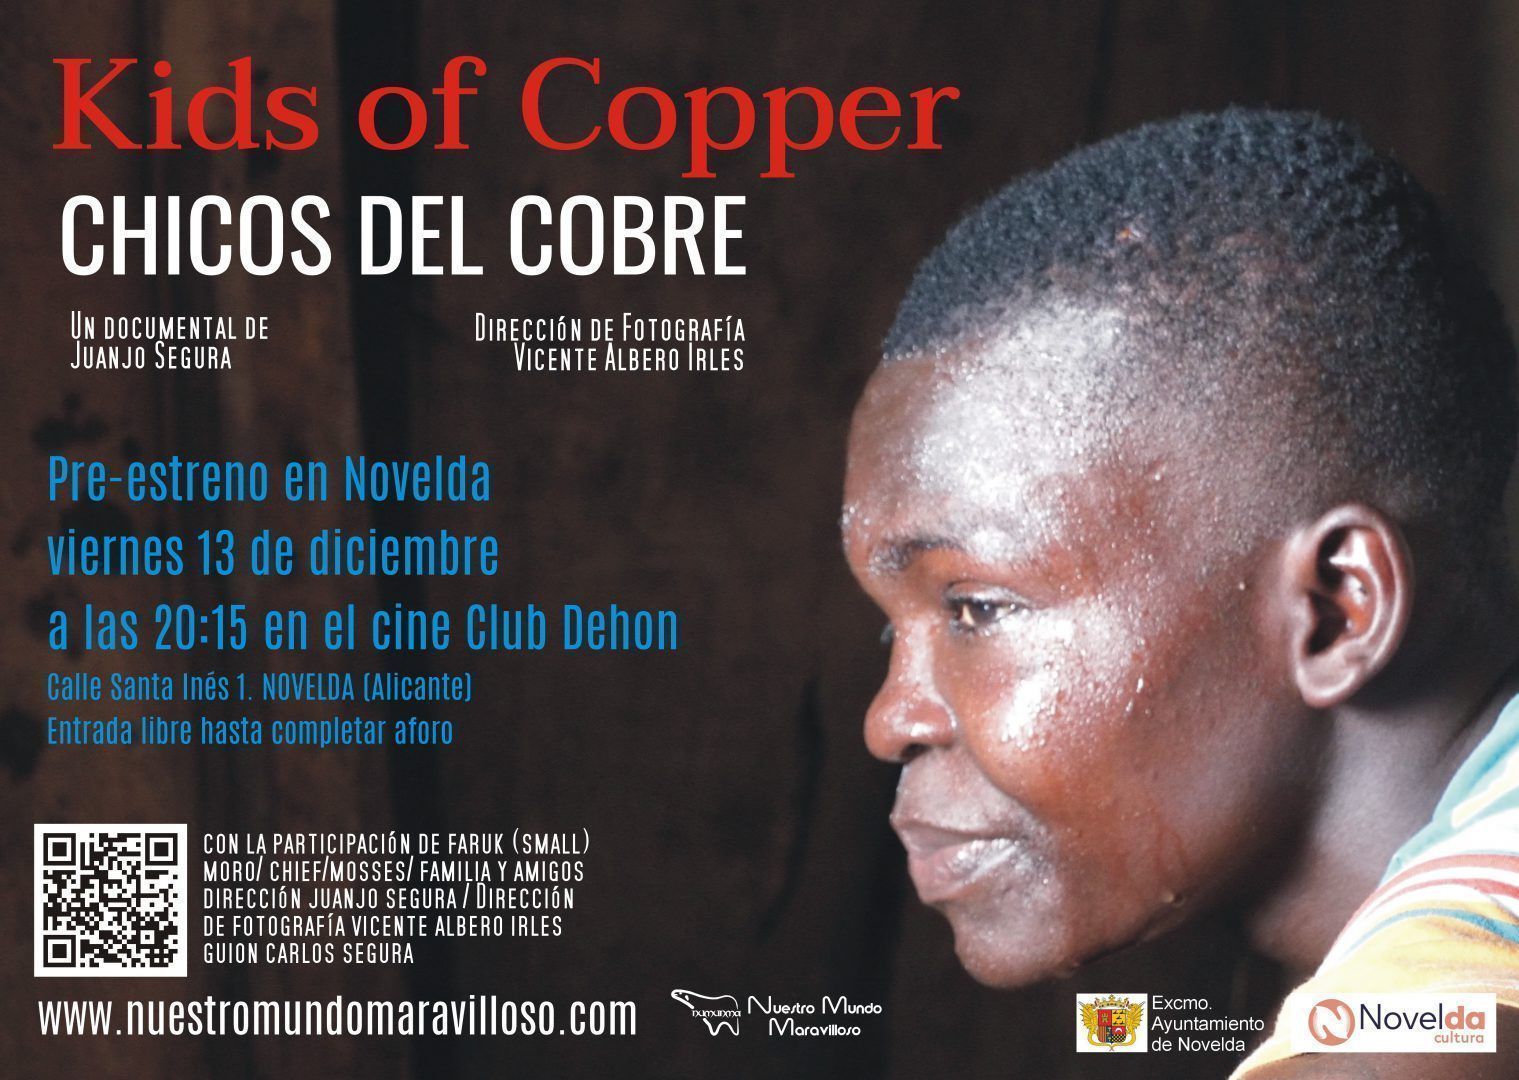 Ayuntamiento de Novelda Pre-Estreno-CHICOS-DEL-COBRE Pre estrena de Kids of Copper 